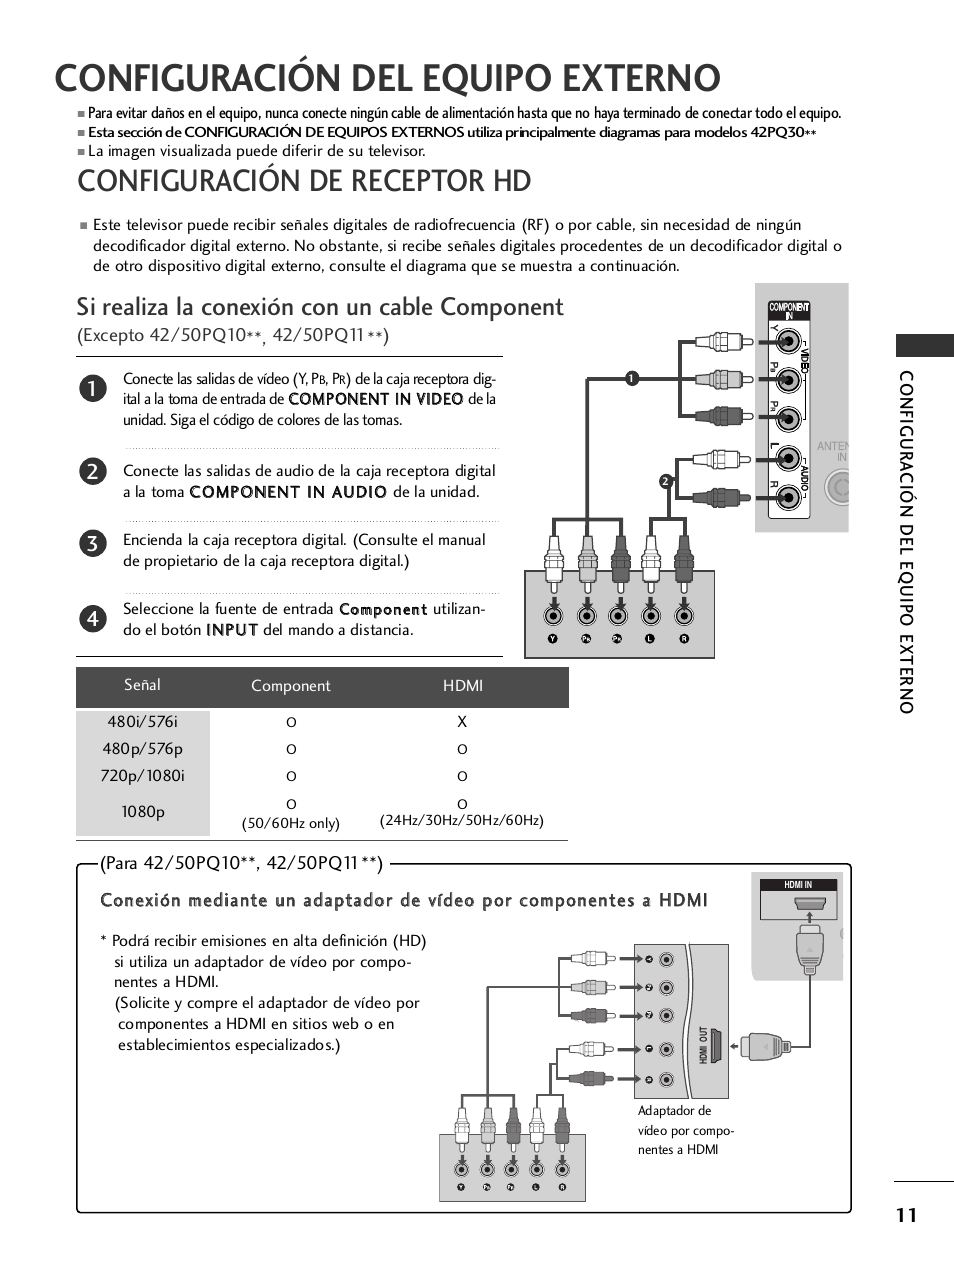 Configuración del equipo externo, Configuración de receptor hd, Si realiza la conexión con un cable component | LG 50PS3000 Manual del usuario | Página 13 / 124